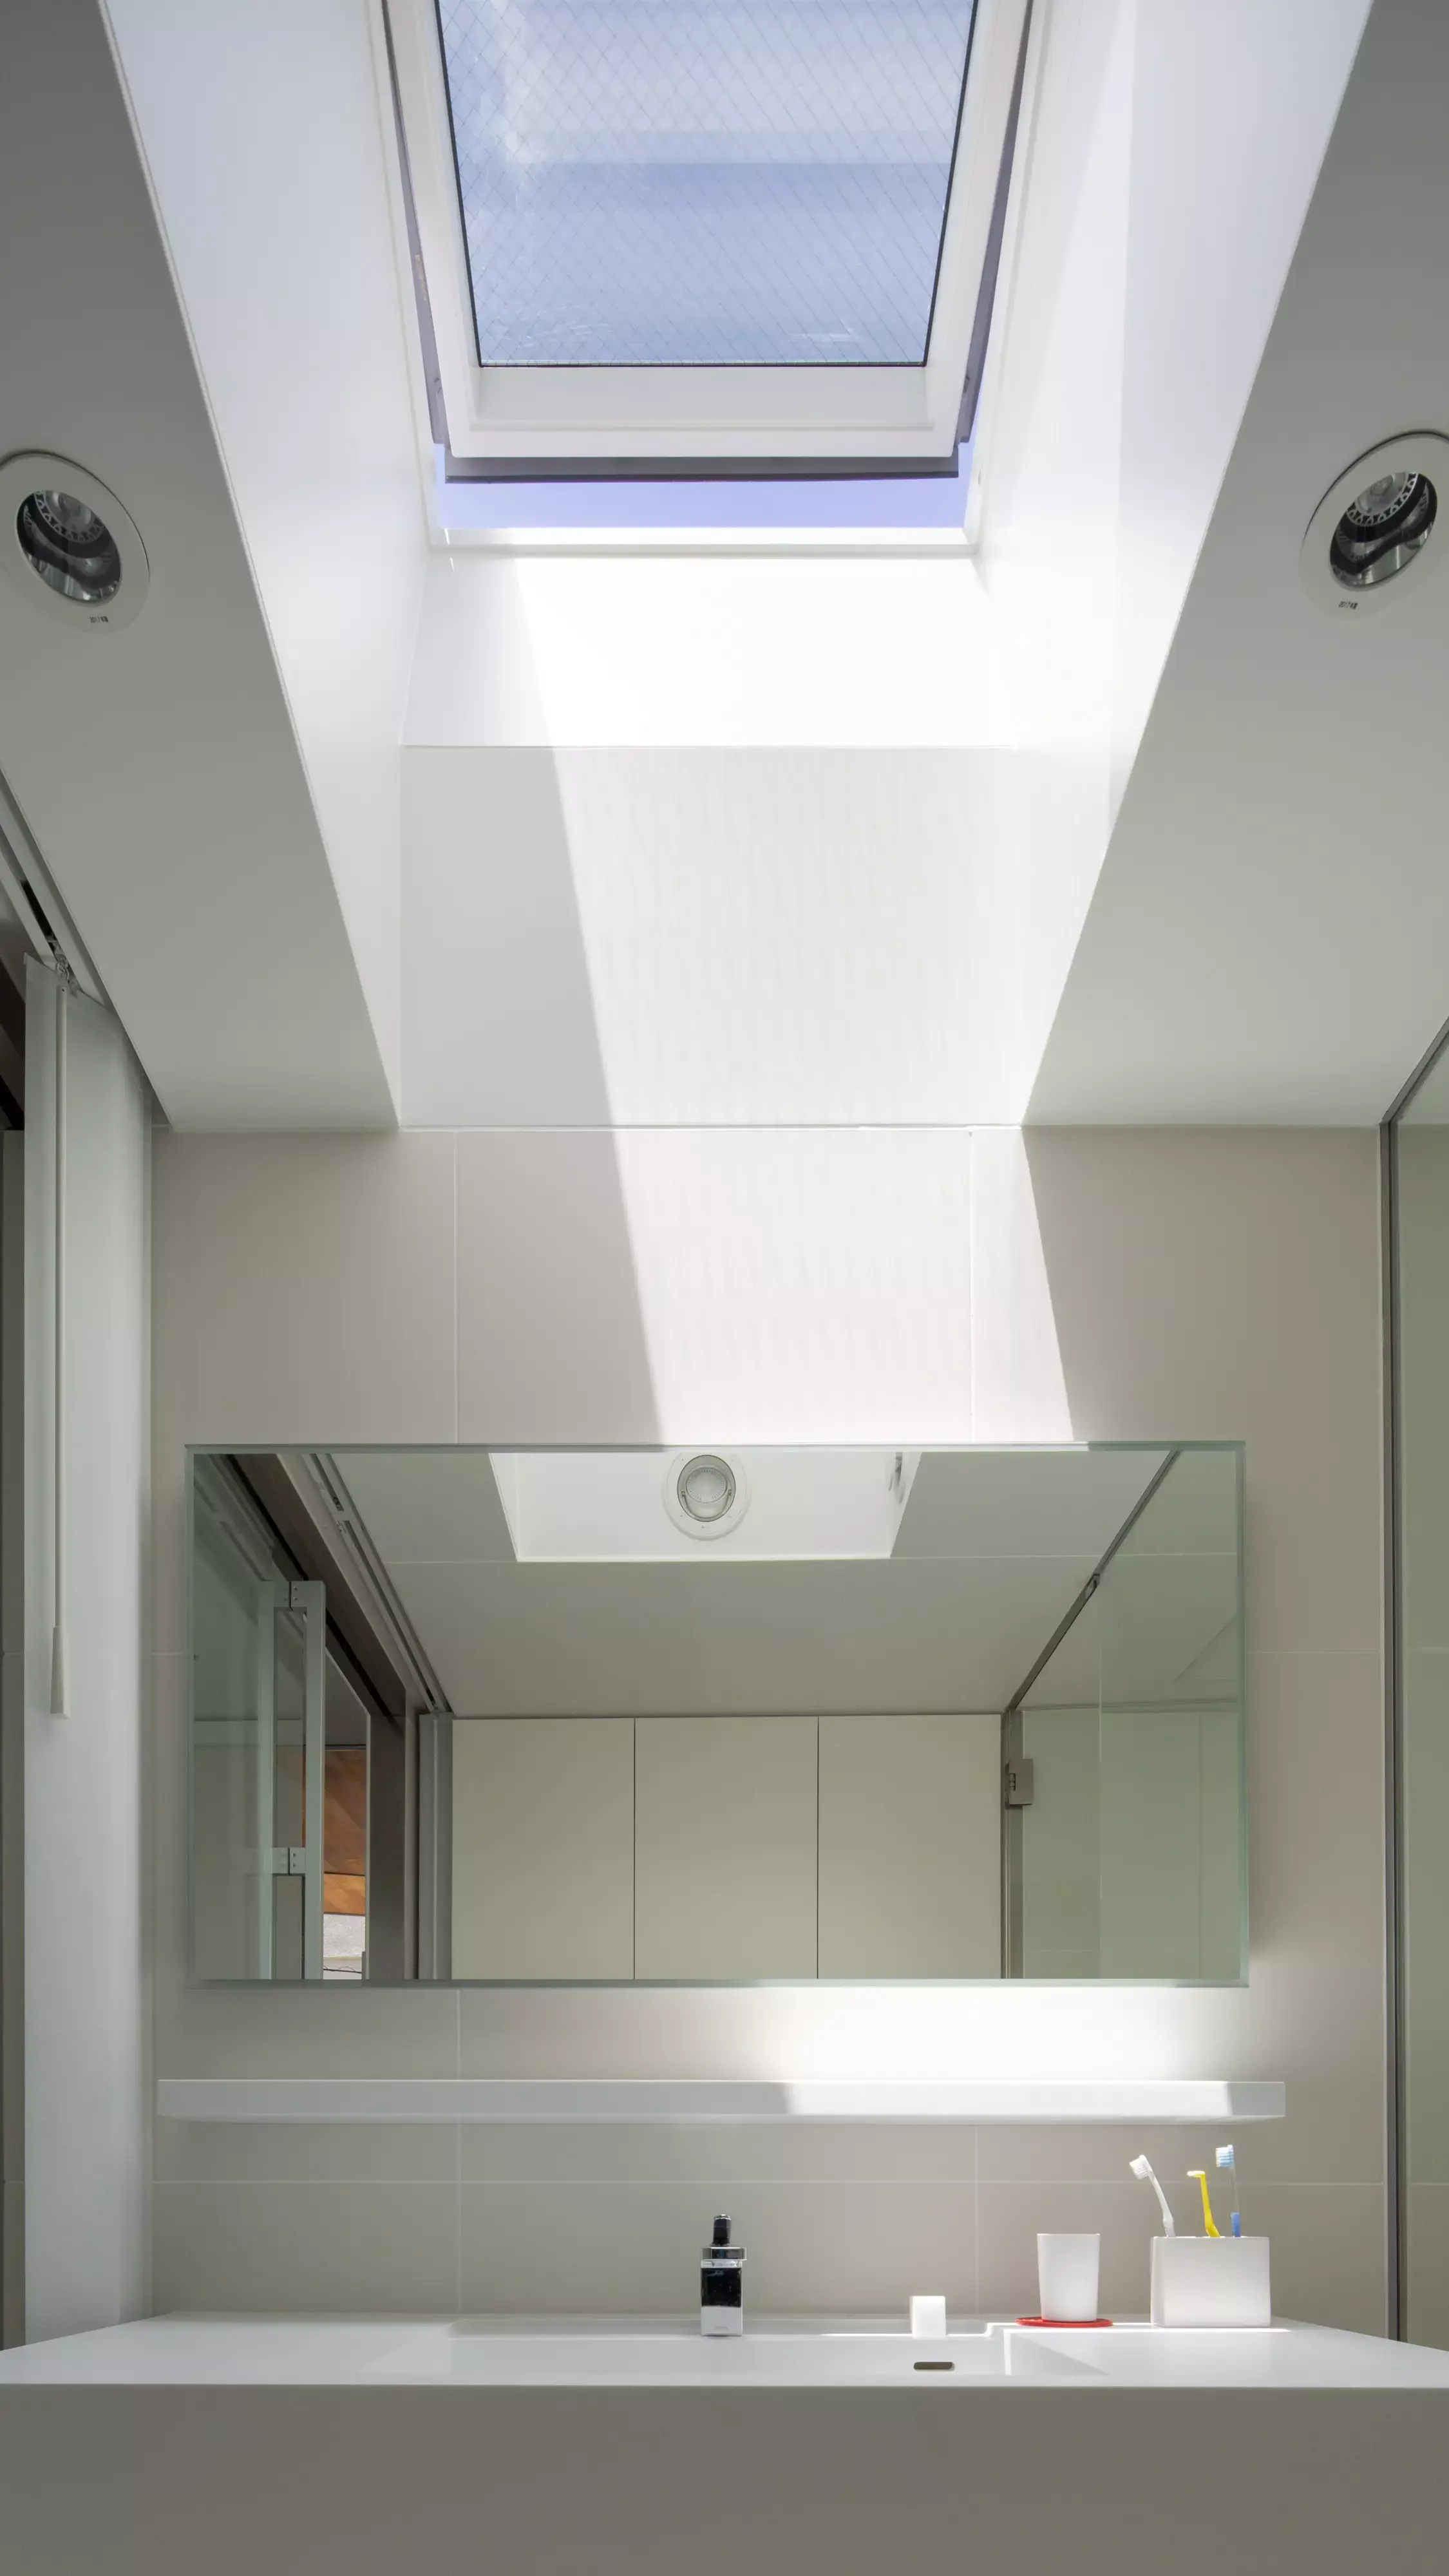 Salle de bain moderne avec lumière naturelle d'une fenêtre de toit VELUX, lavabo blanc et grand miroir.